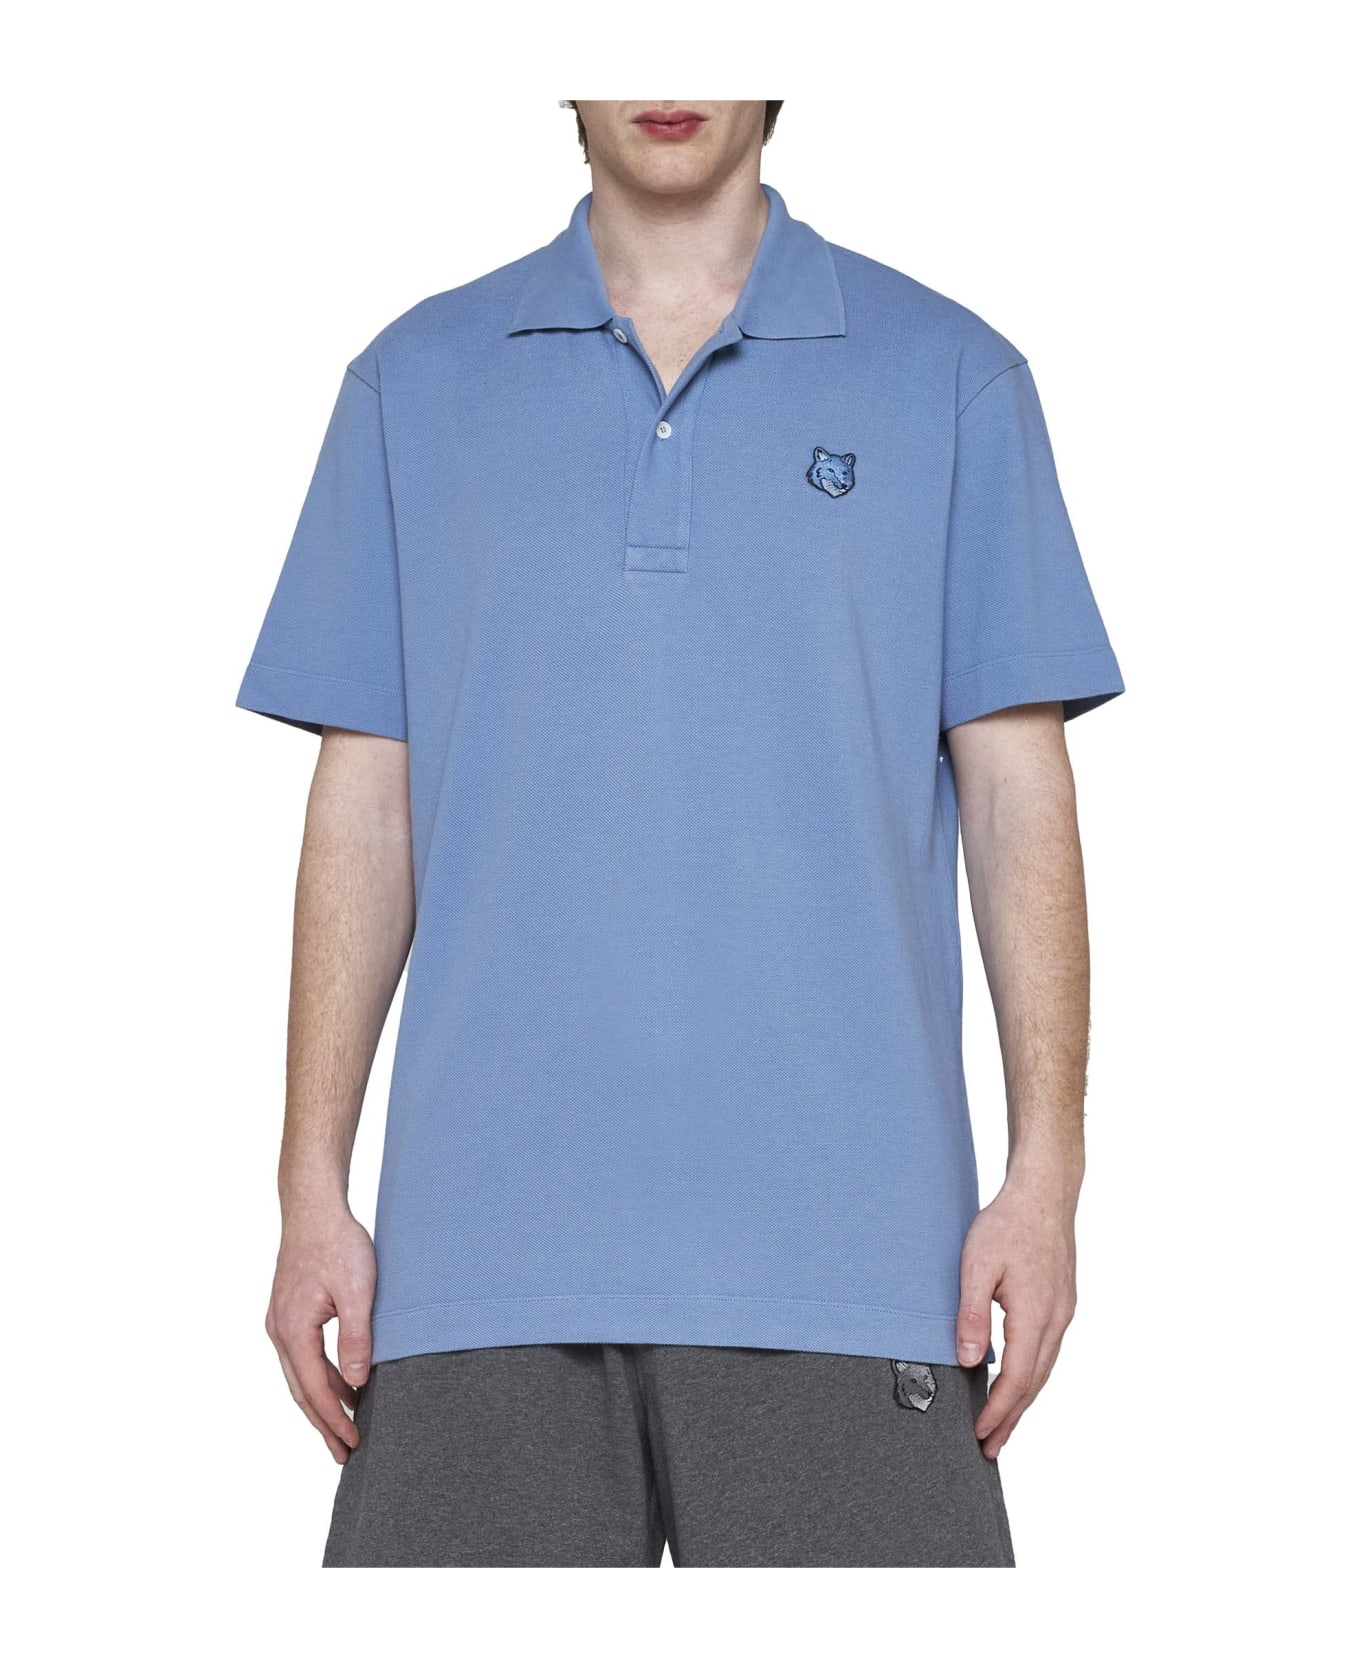 Maison Kitsuné Polo Shirt - Hampton blue